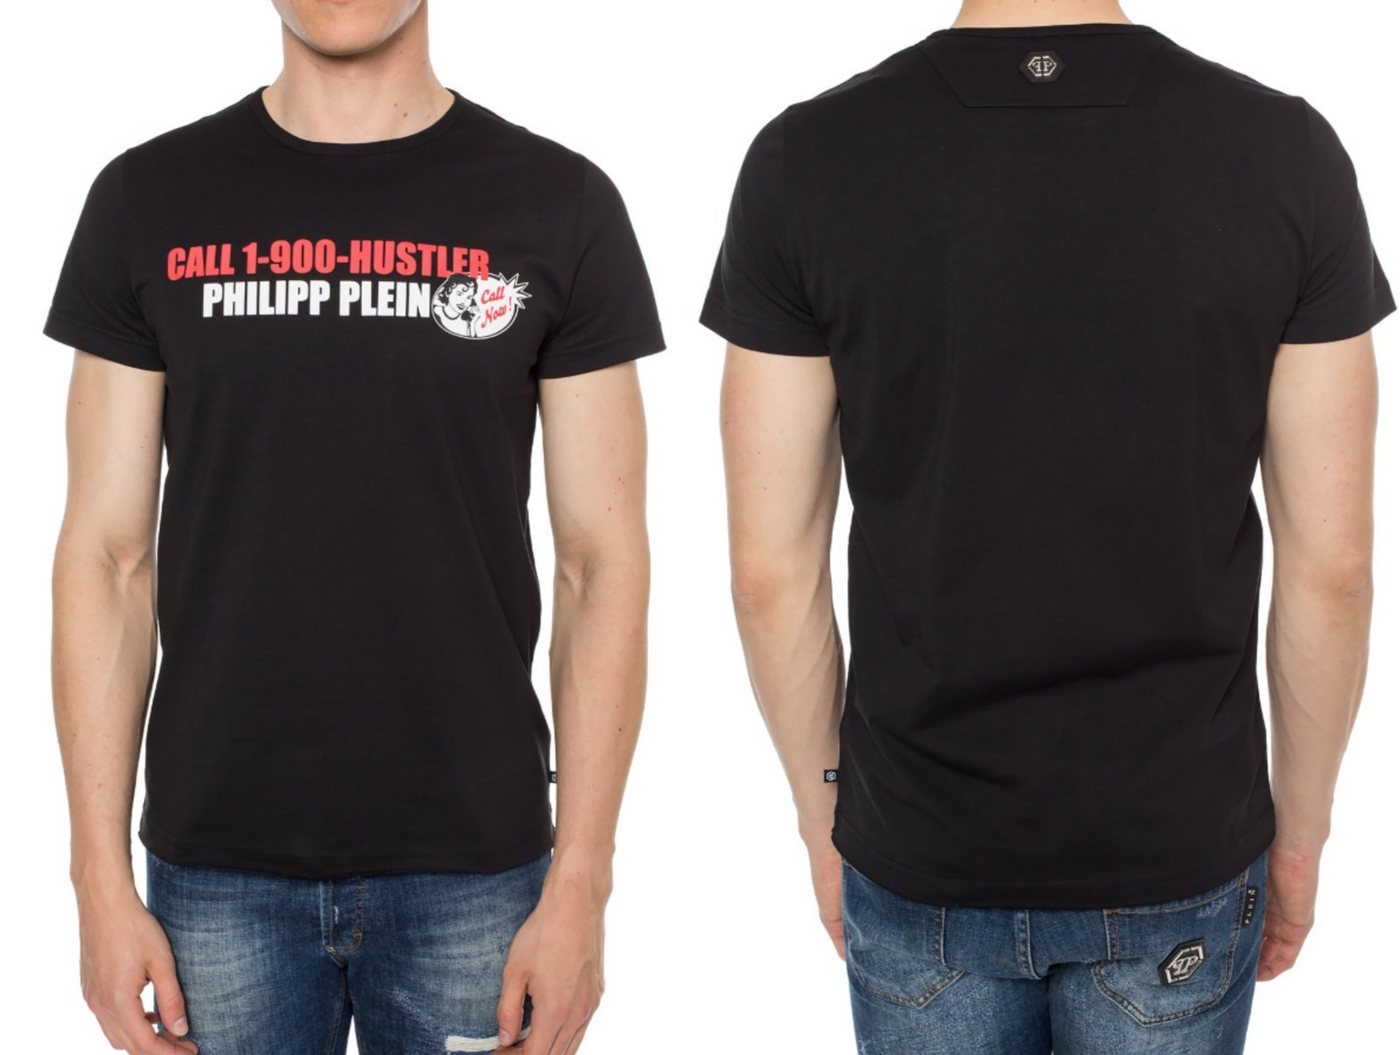 PHILIPP PLEIN T-Shirt Philipp Plein Platinium Cut CALL HUSTLER Logo Shirt Round Neck T-Shirt von PHILIPP PLEIN